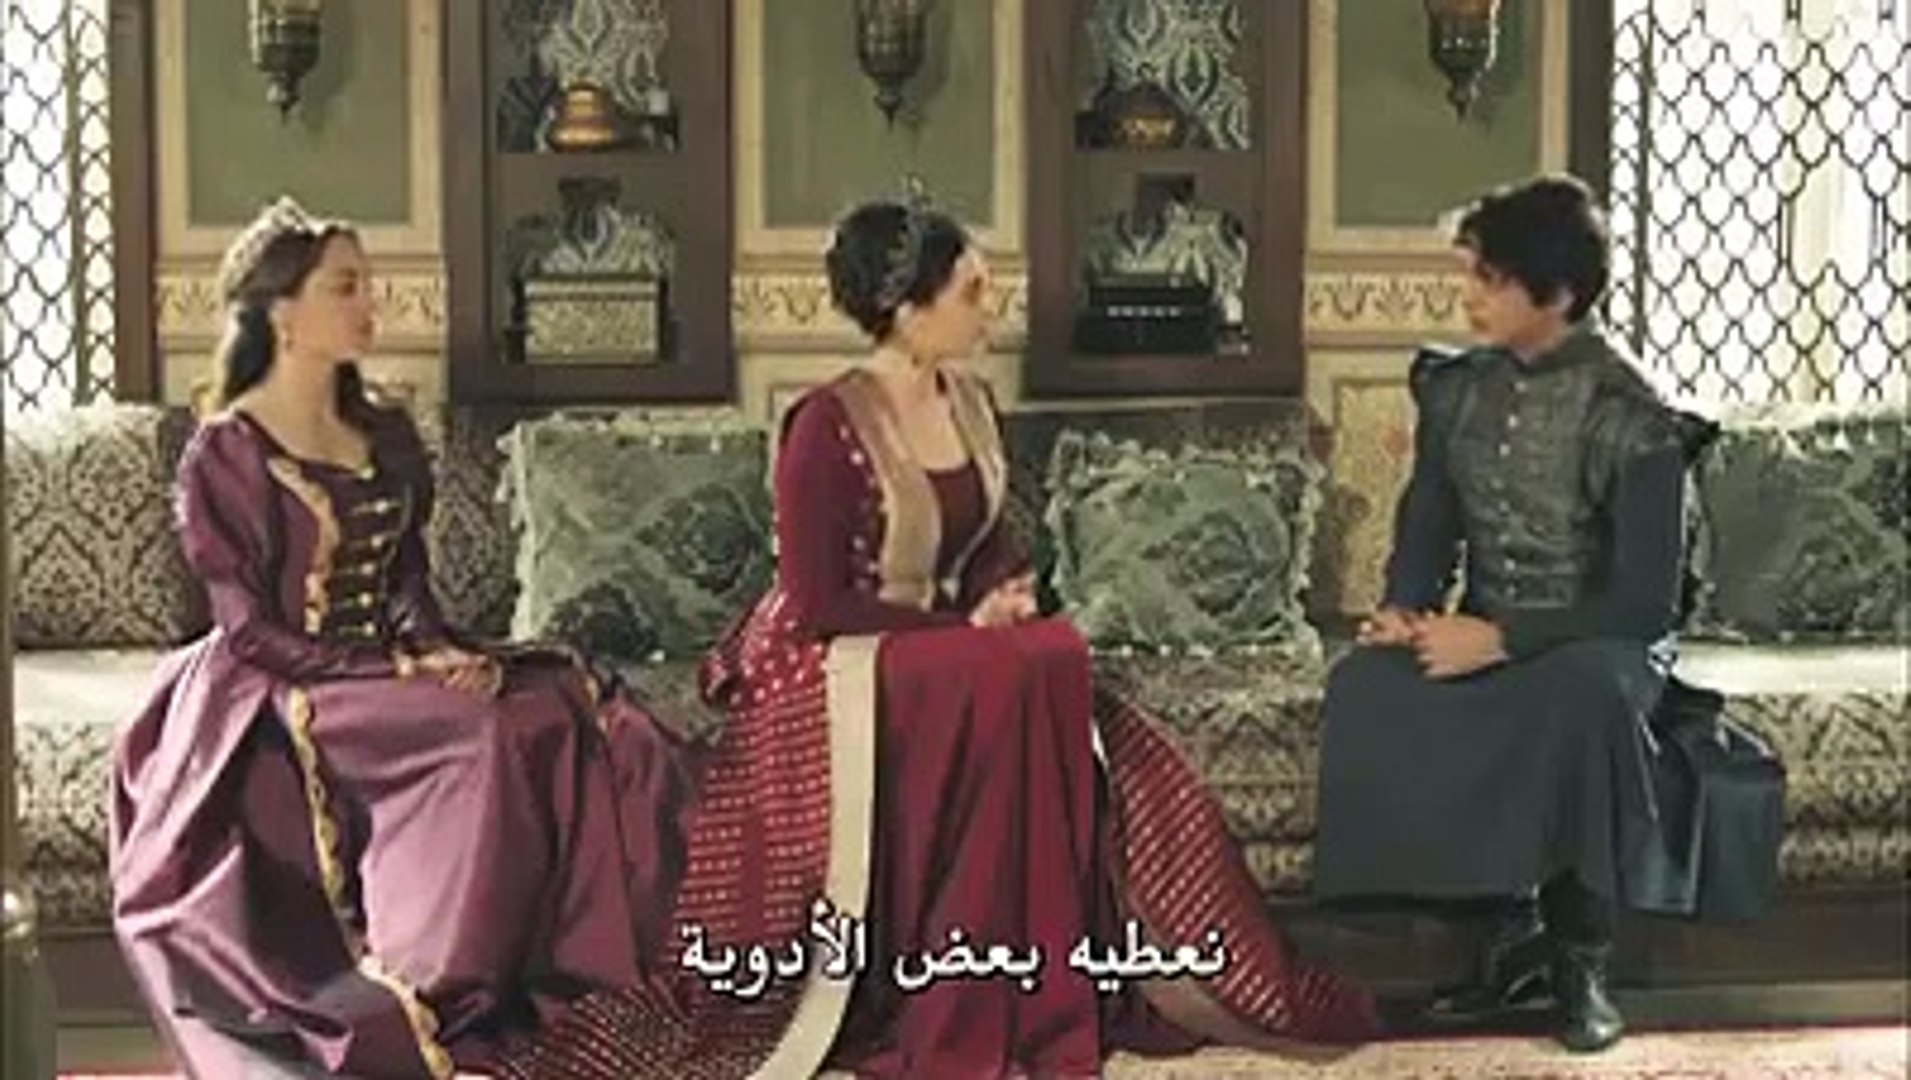 السلطانة كوسيم الحلقة 24 موت السلطان أحمد (أرجو الدعم بالضغط على اشتراك) -  فيديو Dailymotion